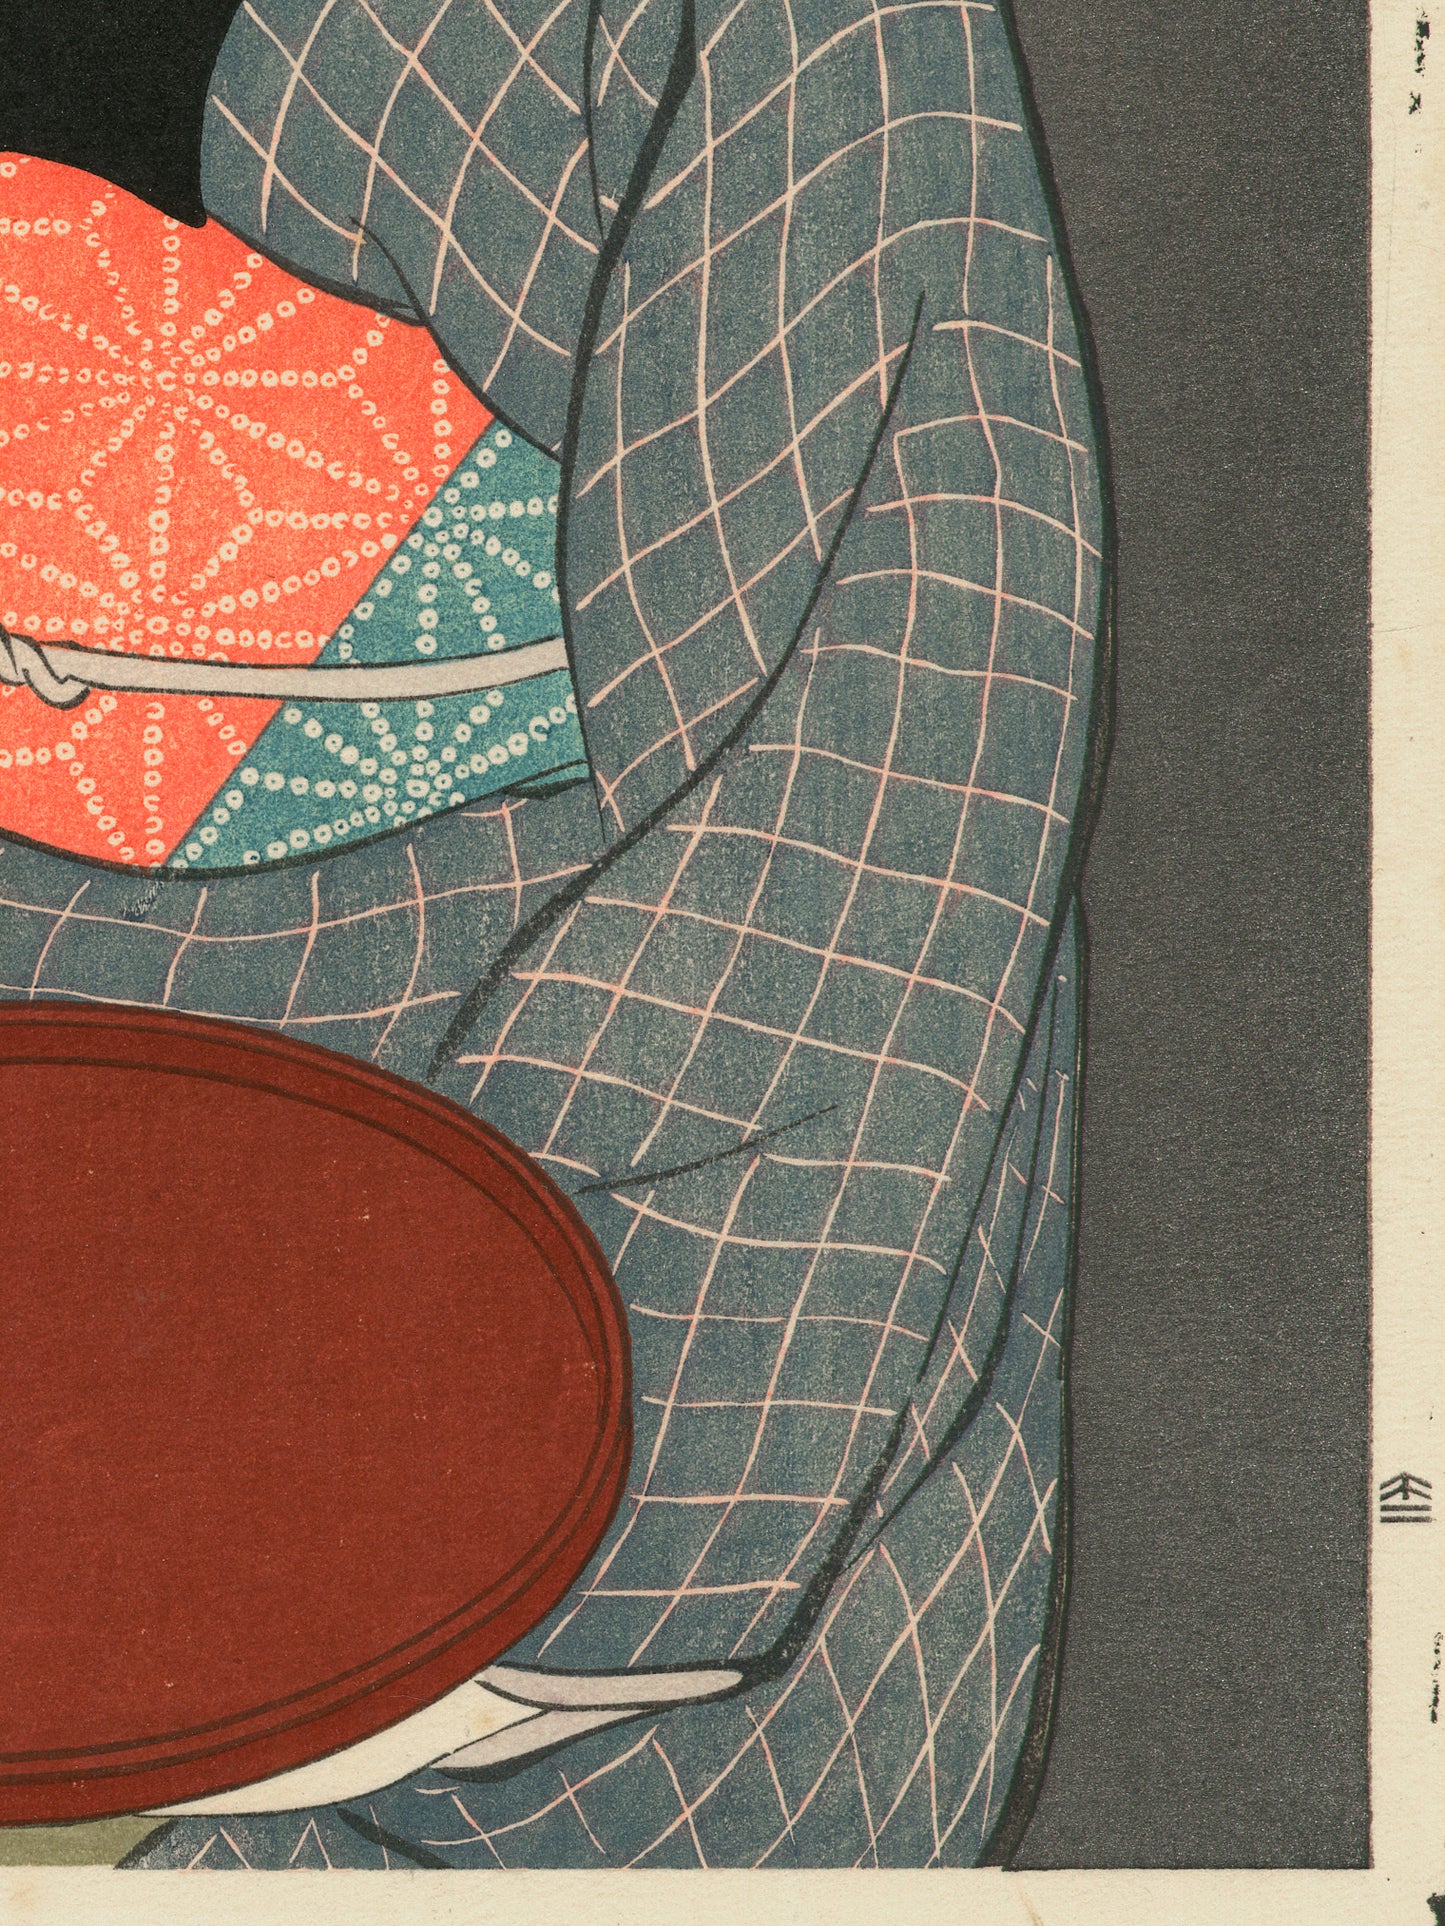 Estampe japonaise détail de l’estampe sur le kimono, le plateau rouge et la signature